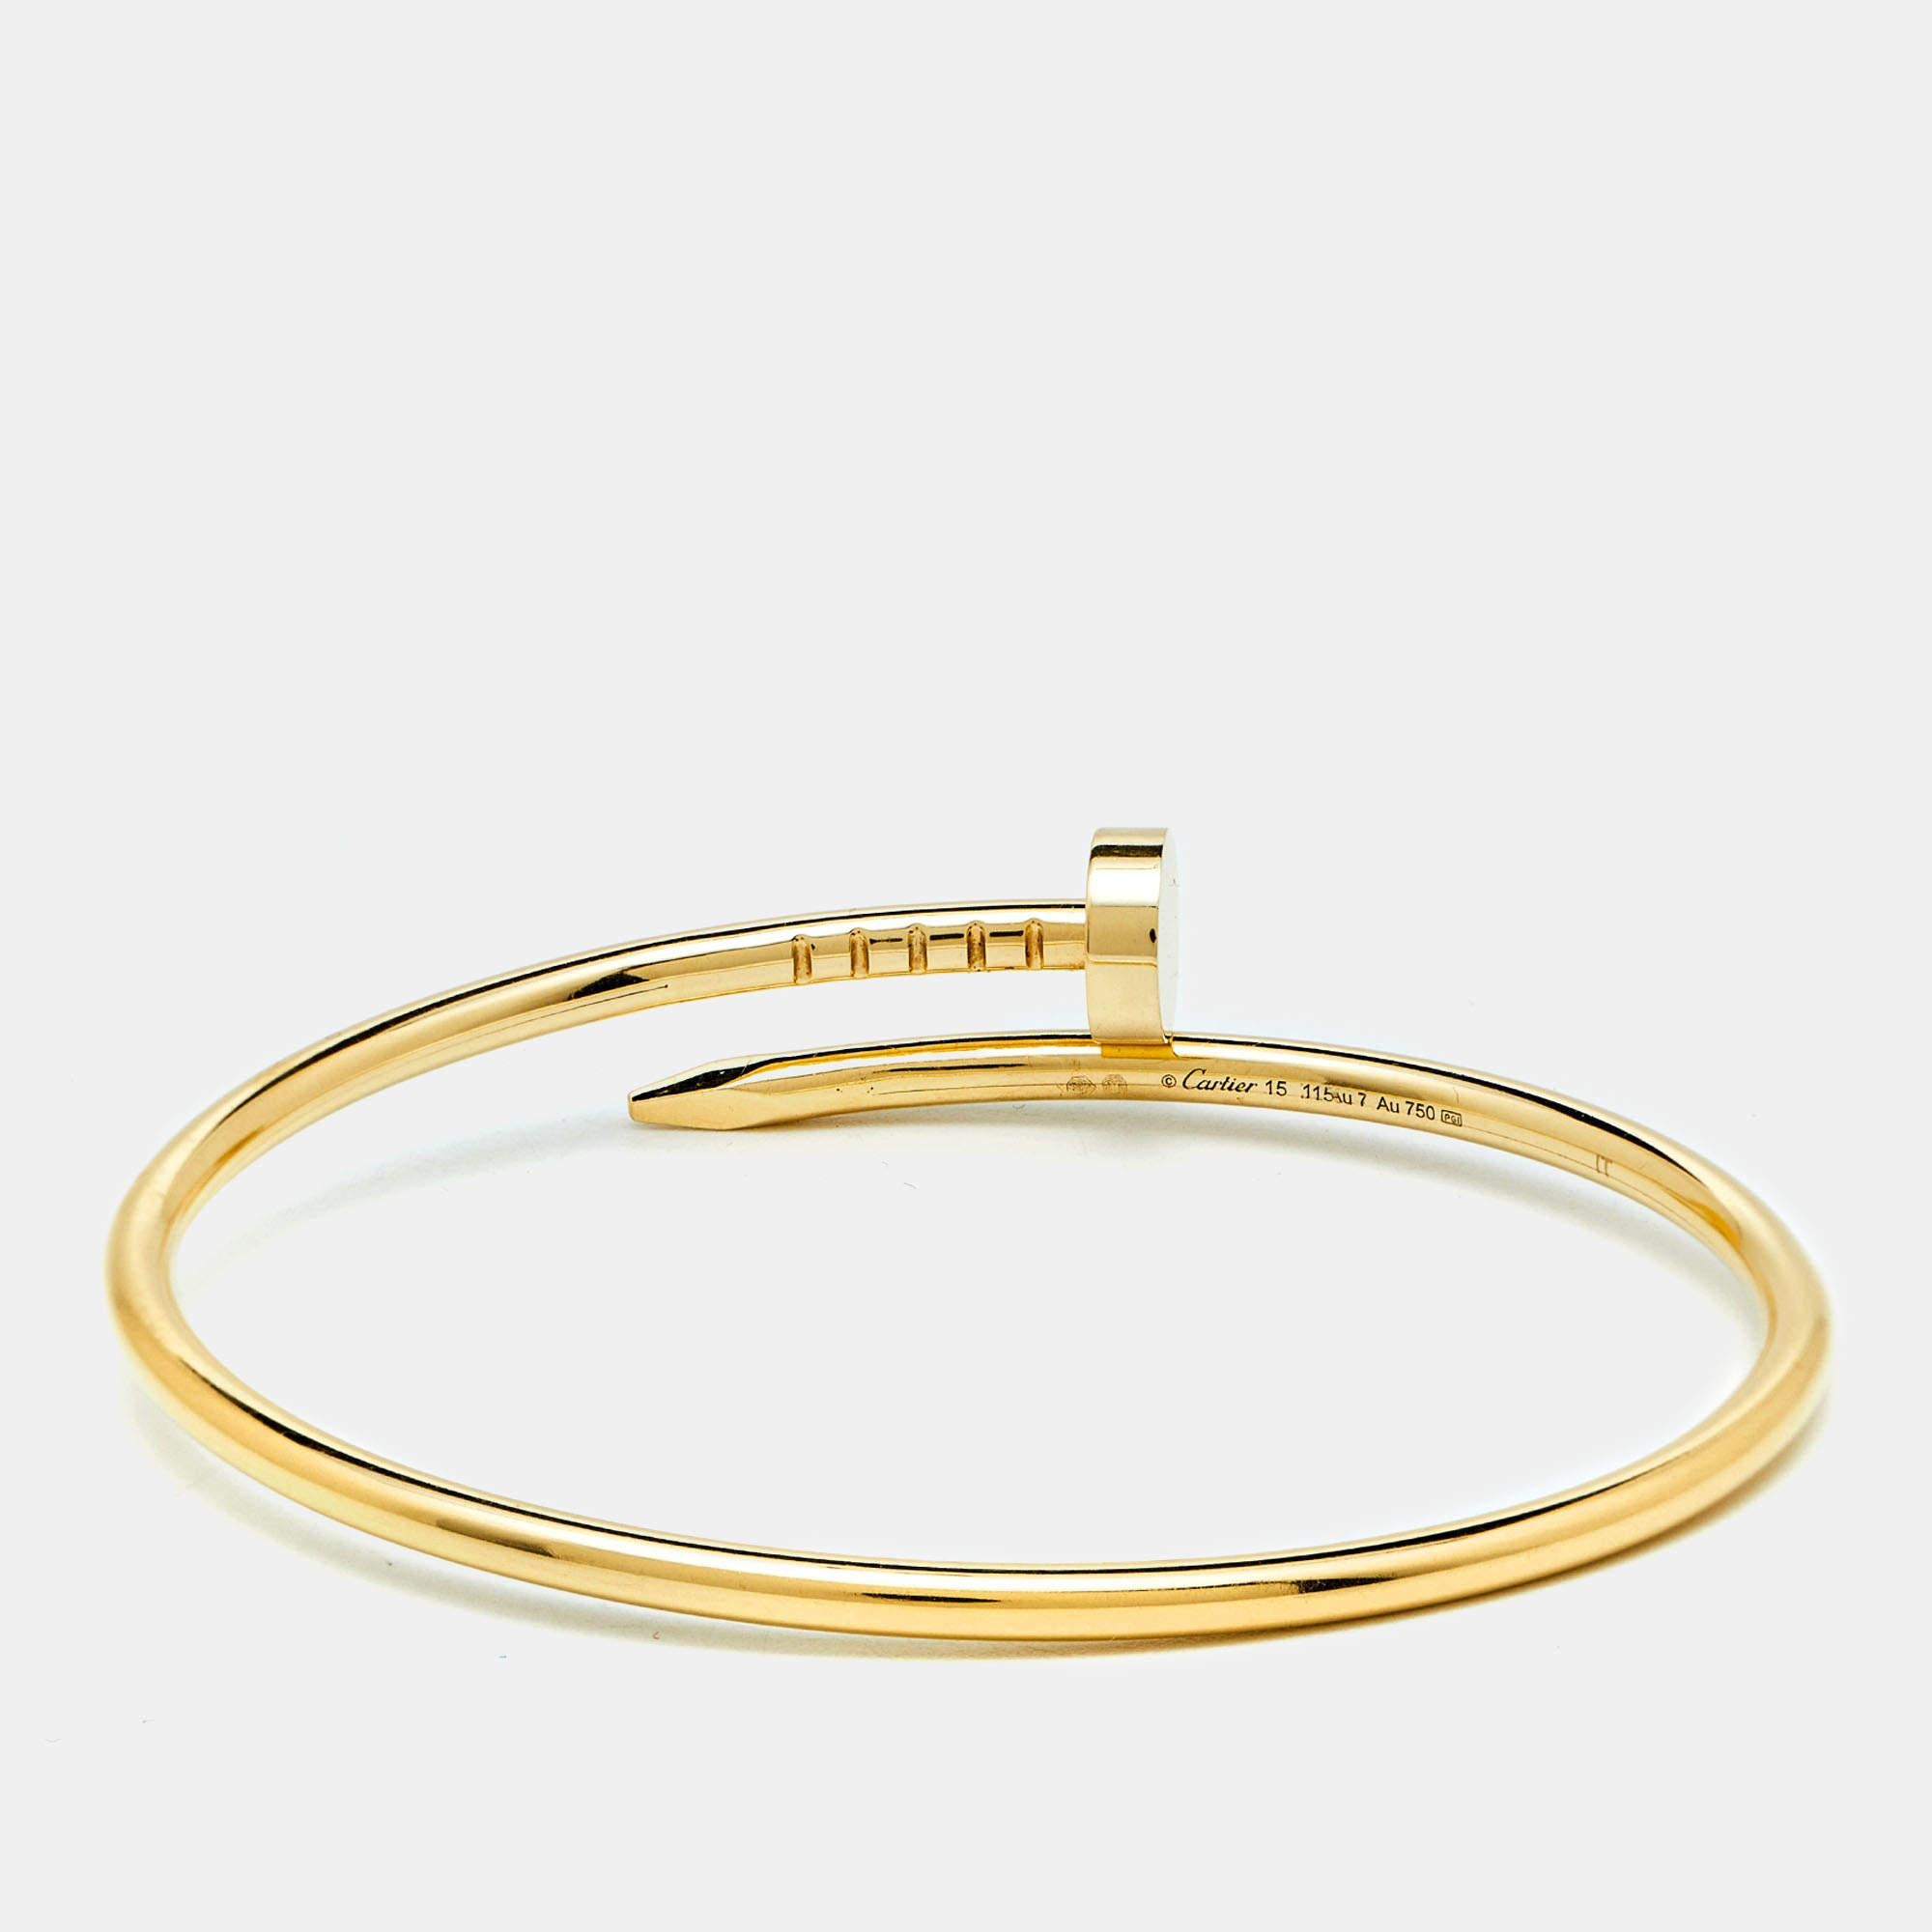 Das Armband Juste Un Clou von Cartier ist ein ikonisches Schmuckstück mit einem von Nägeln inspirierten Design. Das aus luxuriösem 18-karätigem Gelbgold gefertigte Armband verbindet Kühnheit und Eleganz nahtlos miteinander und macht es zu einem